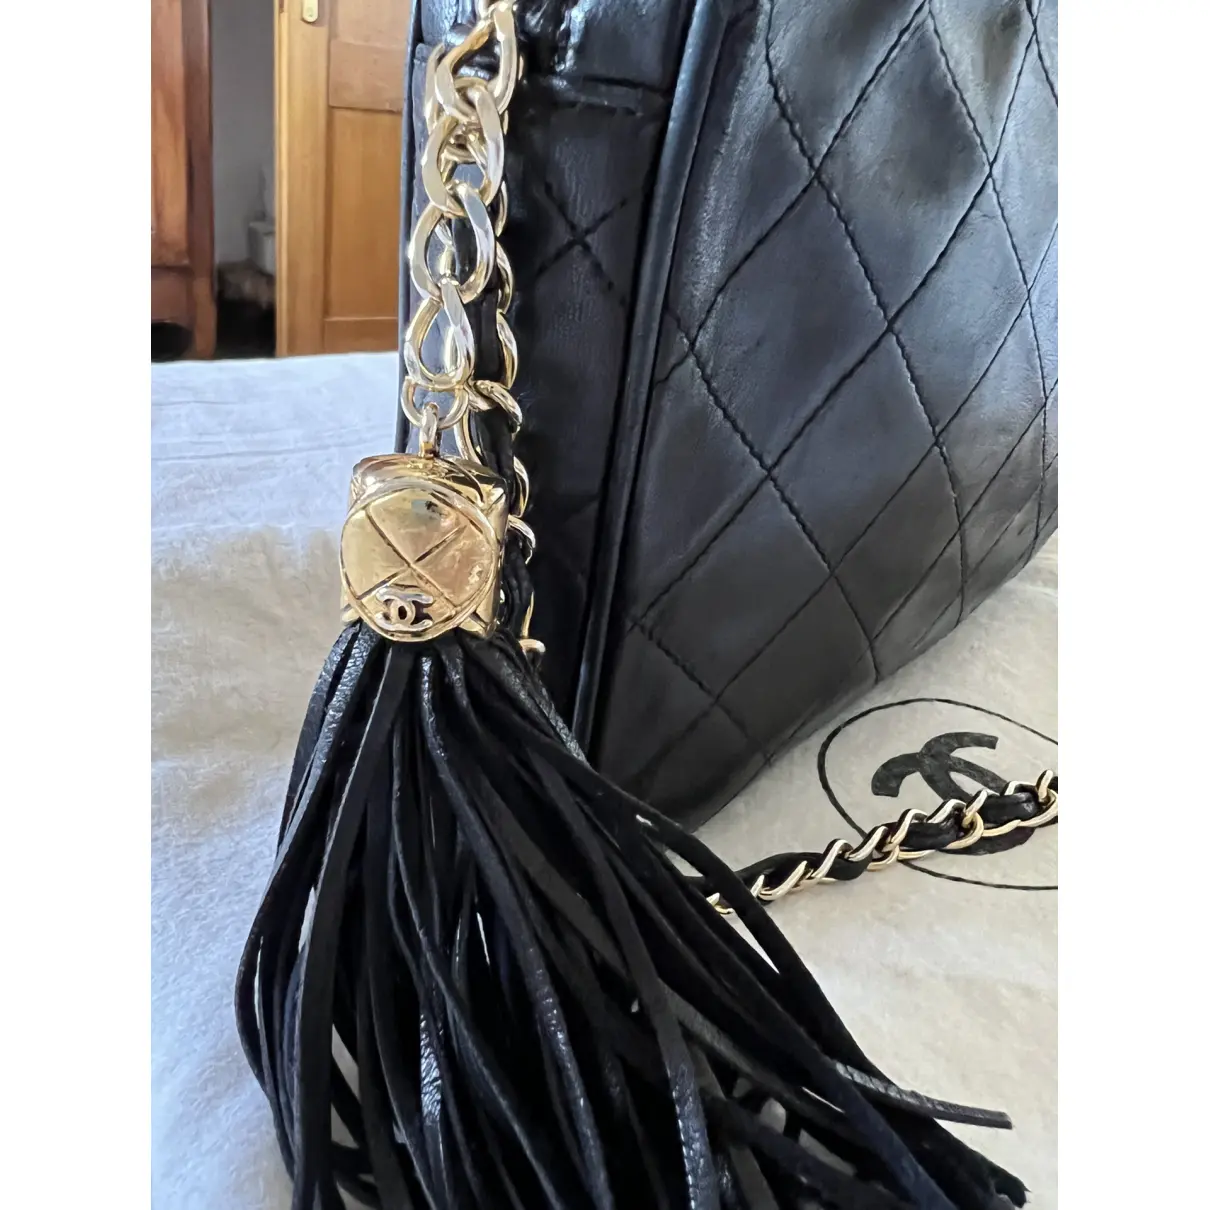 Buy Chanel Camera leather handbag online - Vintage